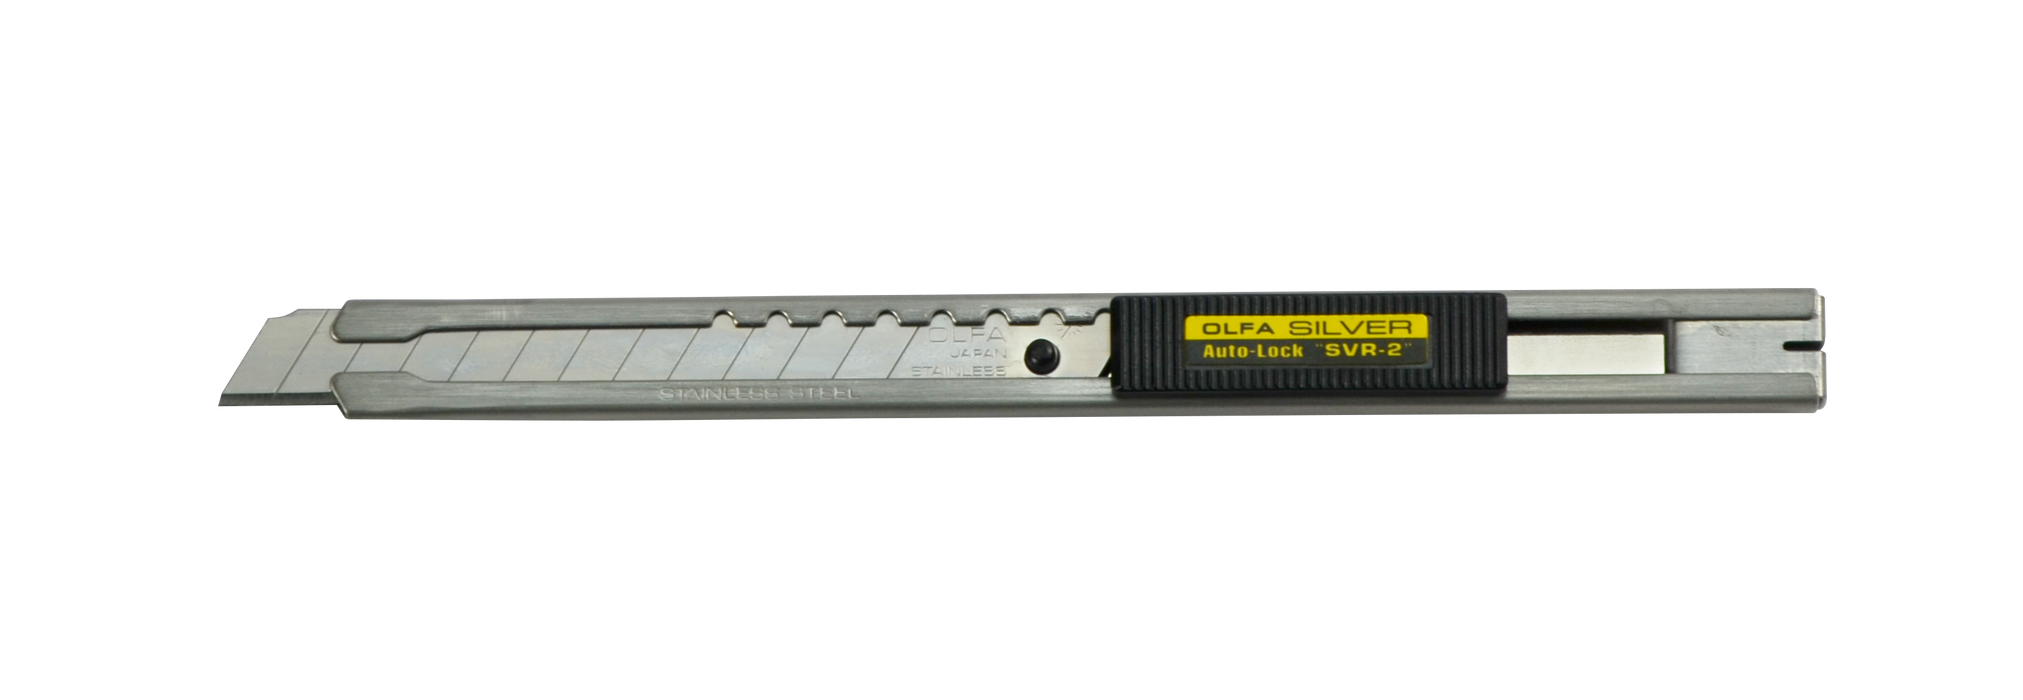 Olfa SVR-2 brytbladskniv för 9mm 59° blad